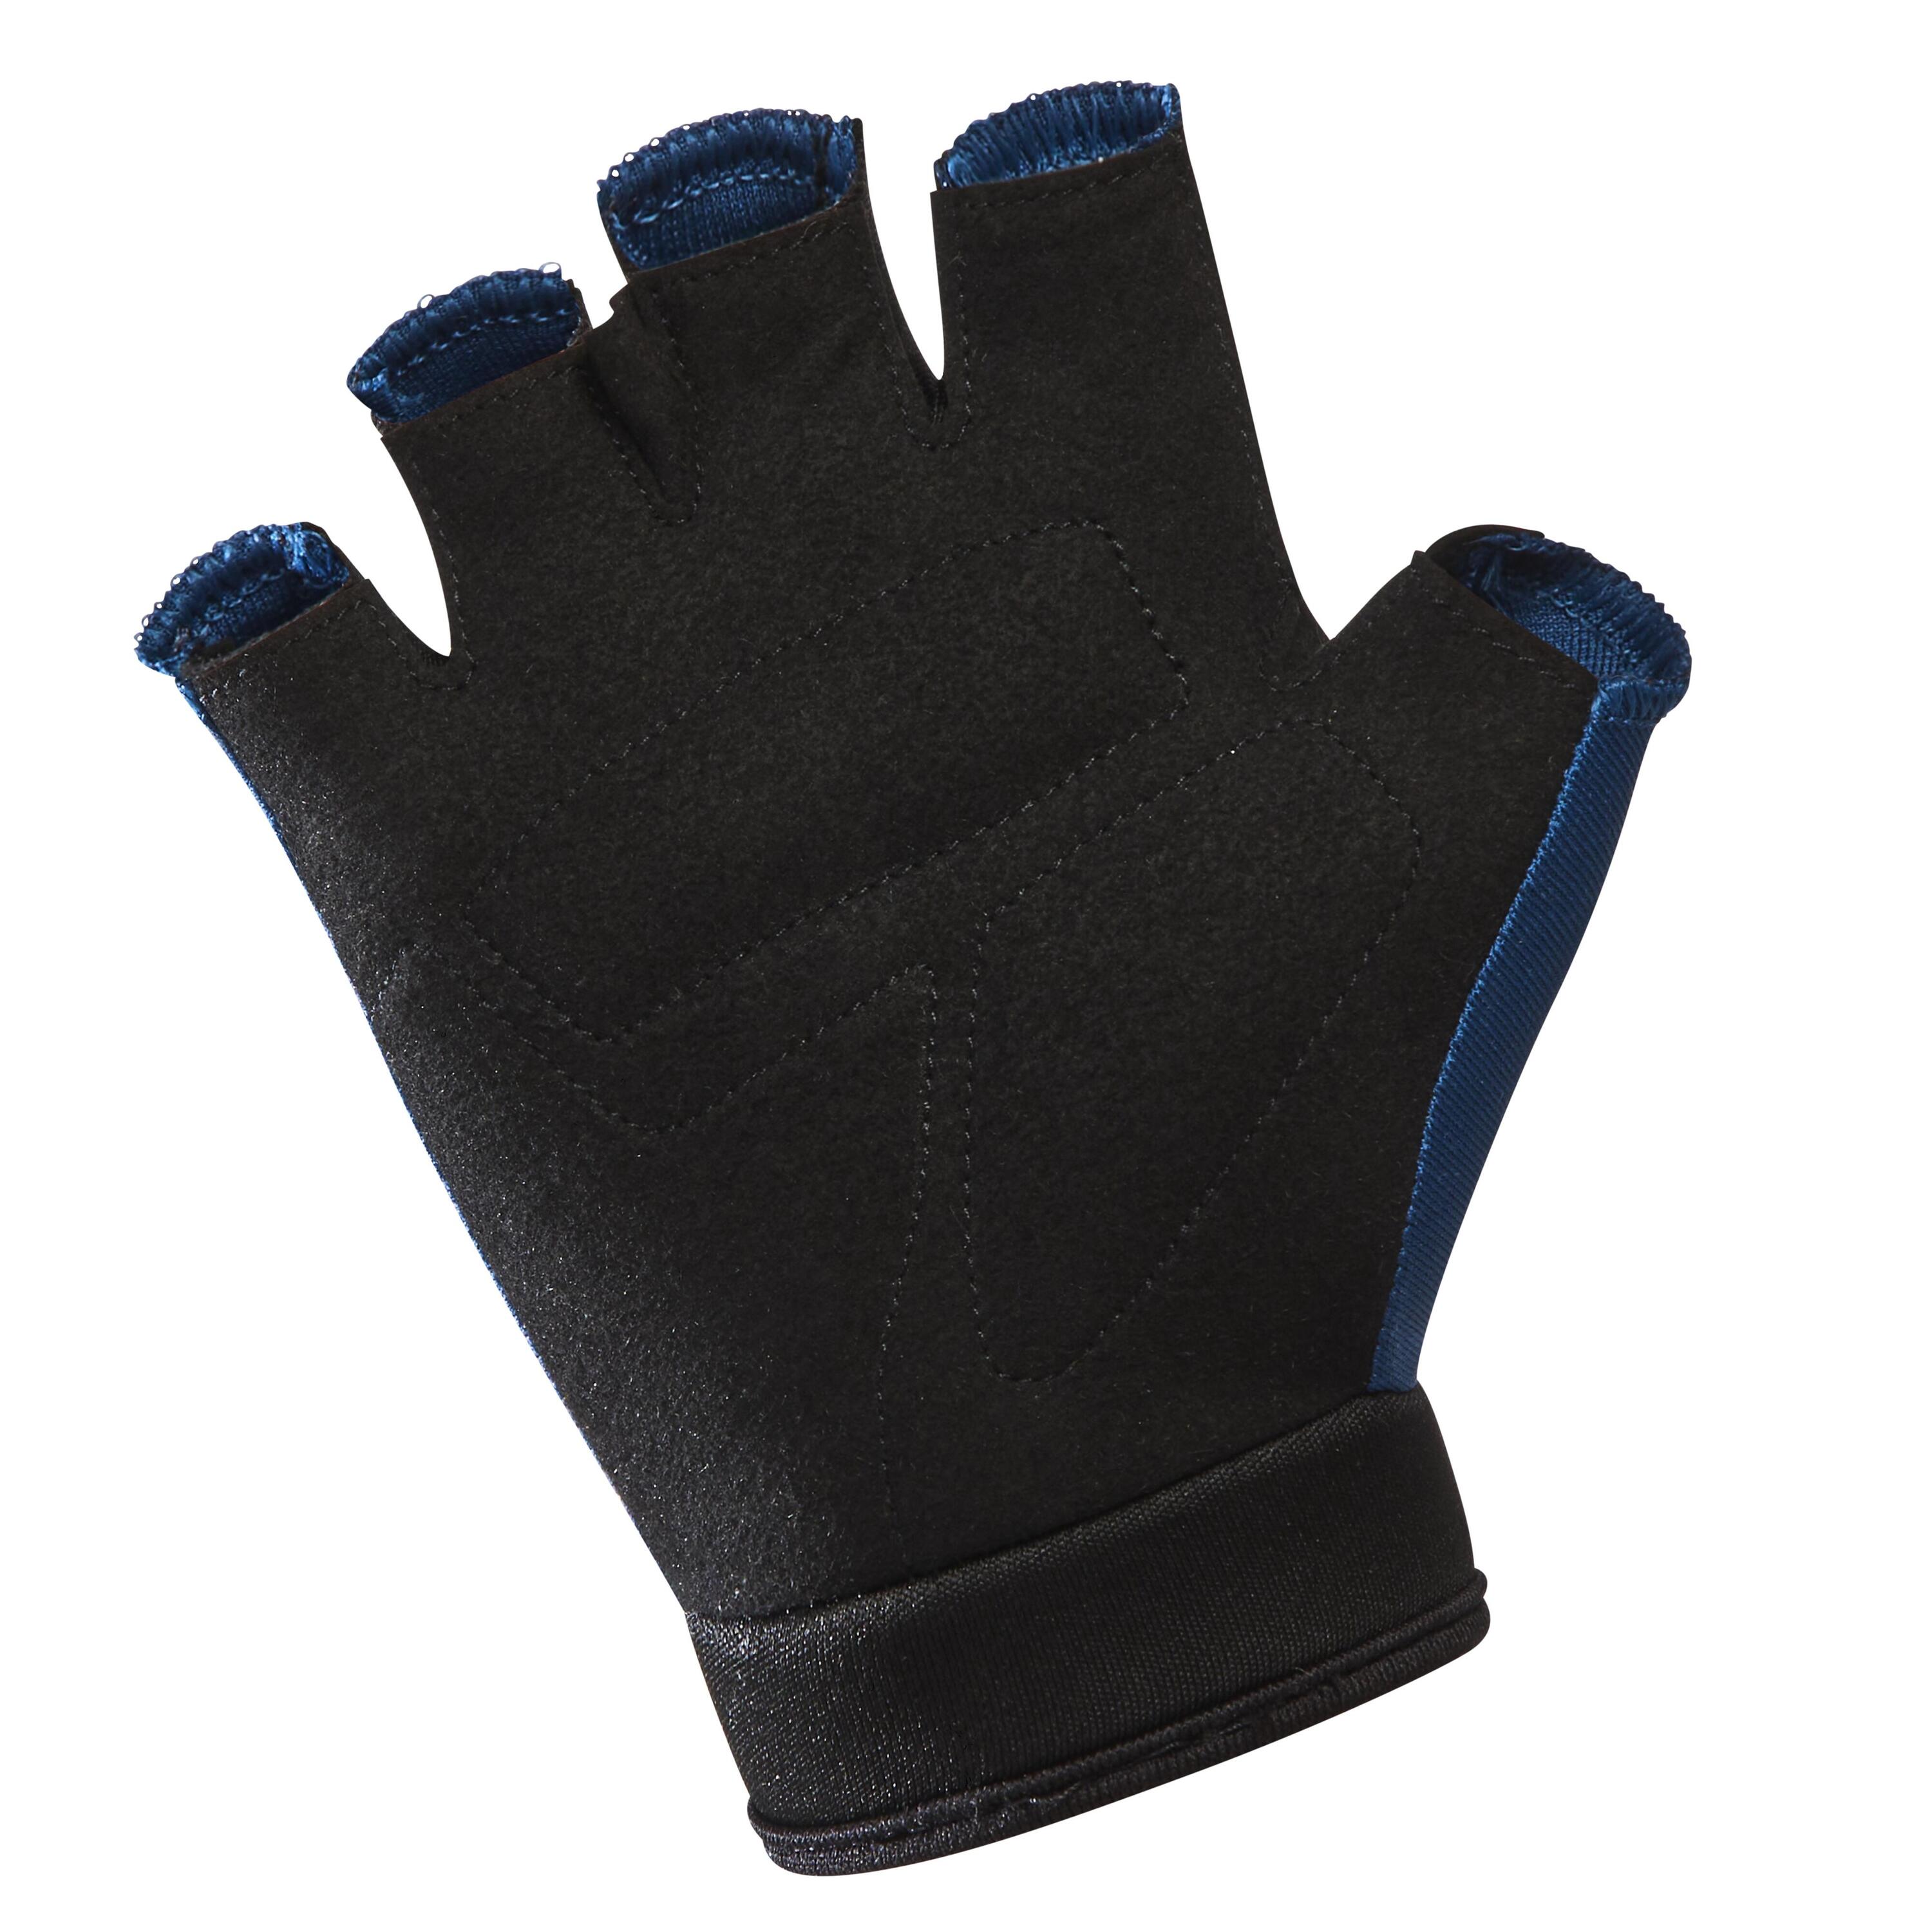 Kids' Cycling Fingerless Gloves - Blue 3/4